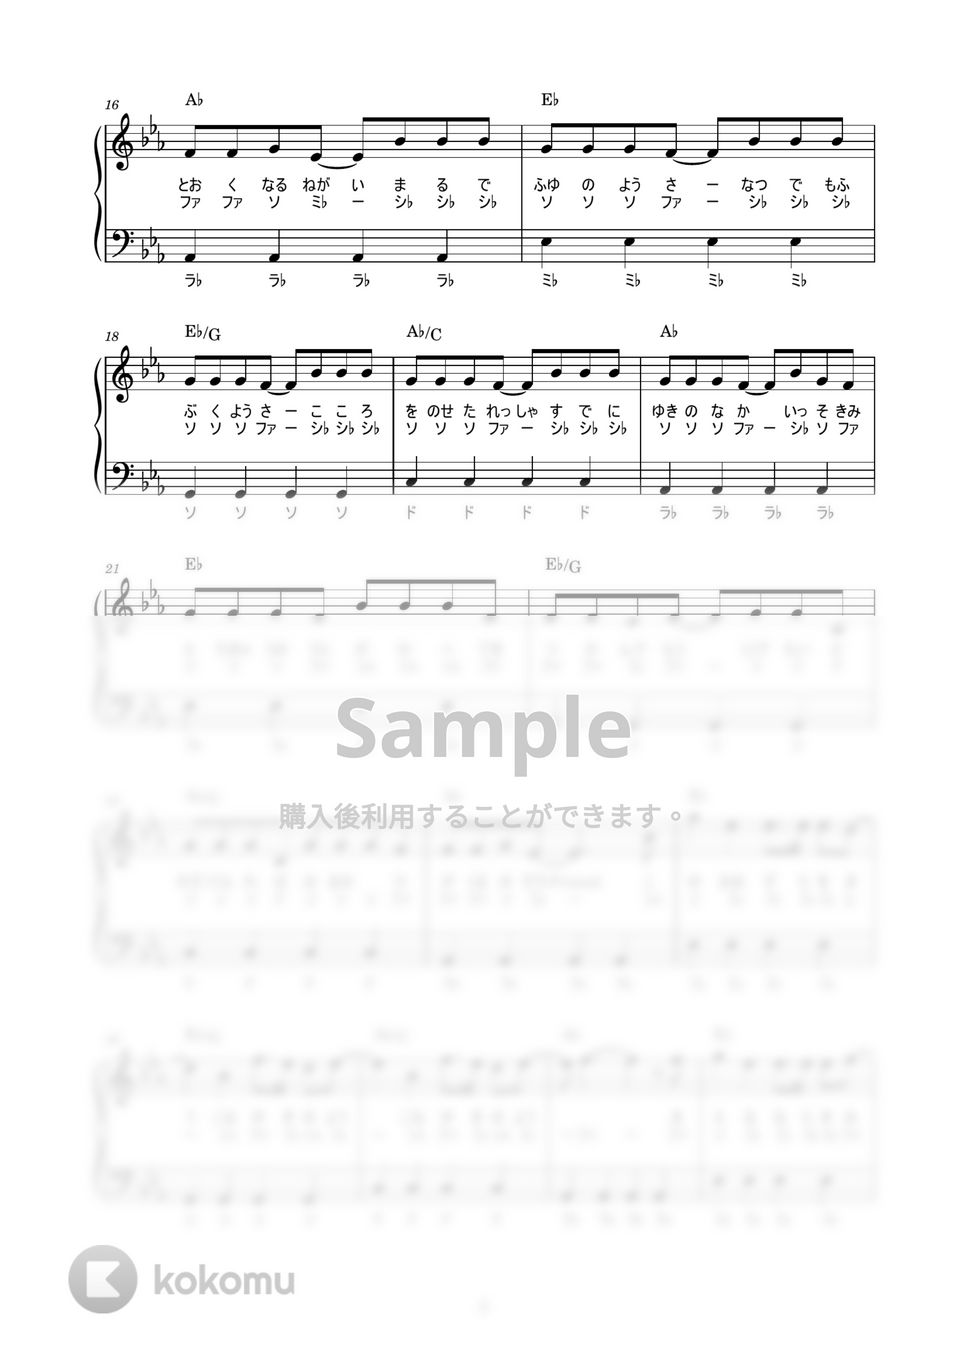 防弾少年団(BTS) - Spring Day (Japanese Ver.) (かんたん / 歌詞付き / ドレミ付き / 初心者) by piano.tokyo